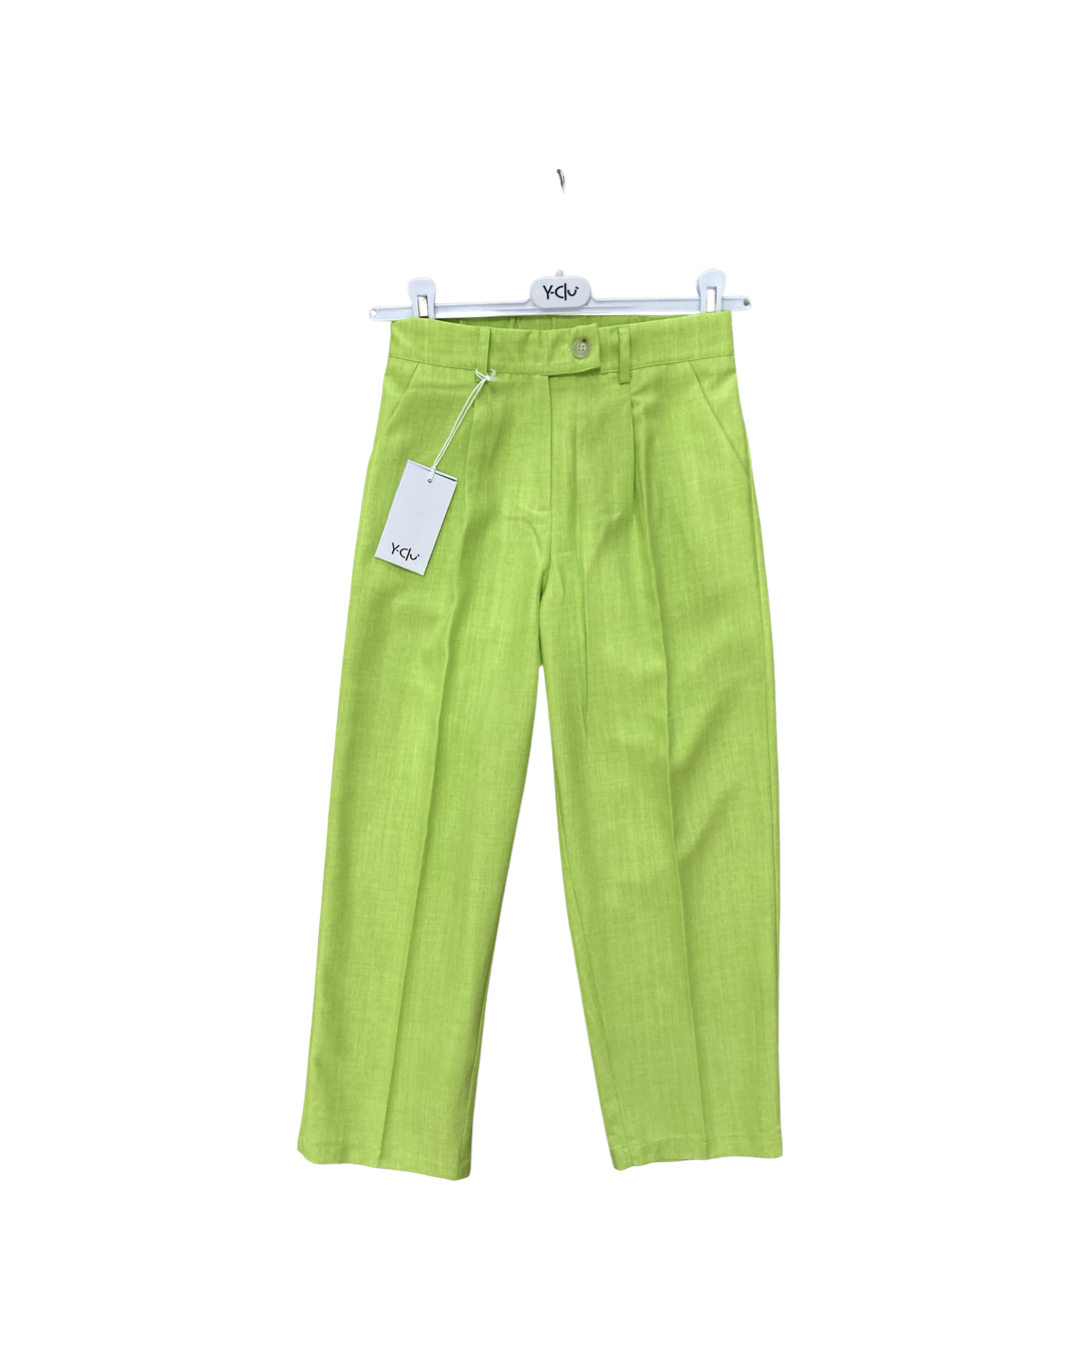 pantalone , Pantalone Lunghe verde elastico in vita  per bambina da 8anni a 16anni Y-Clù Y19147 - BabyBimbo 0-16, abbigliamento bambini